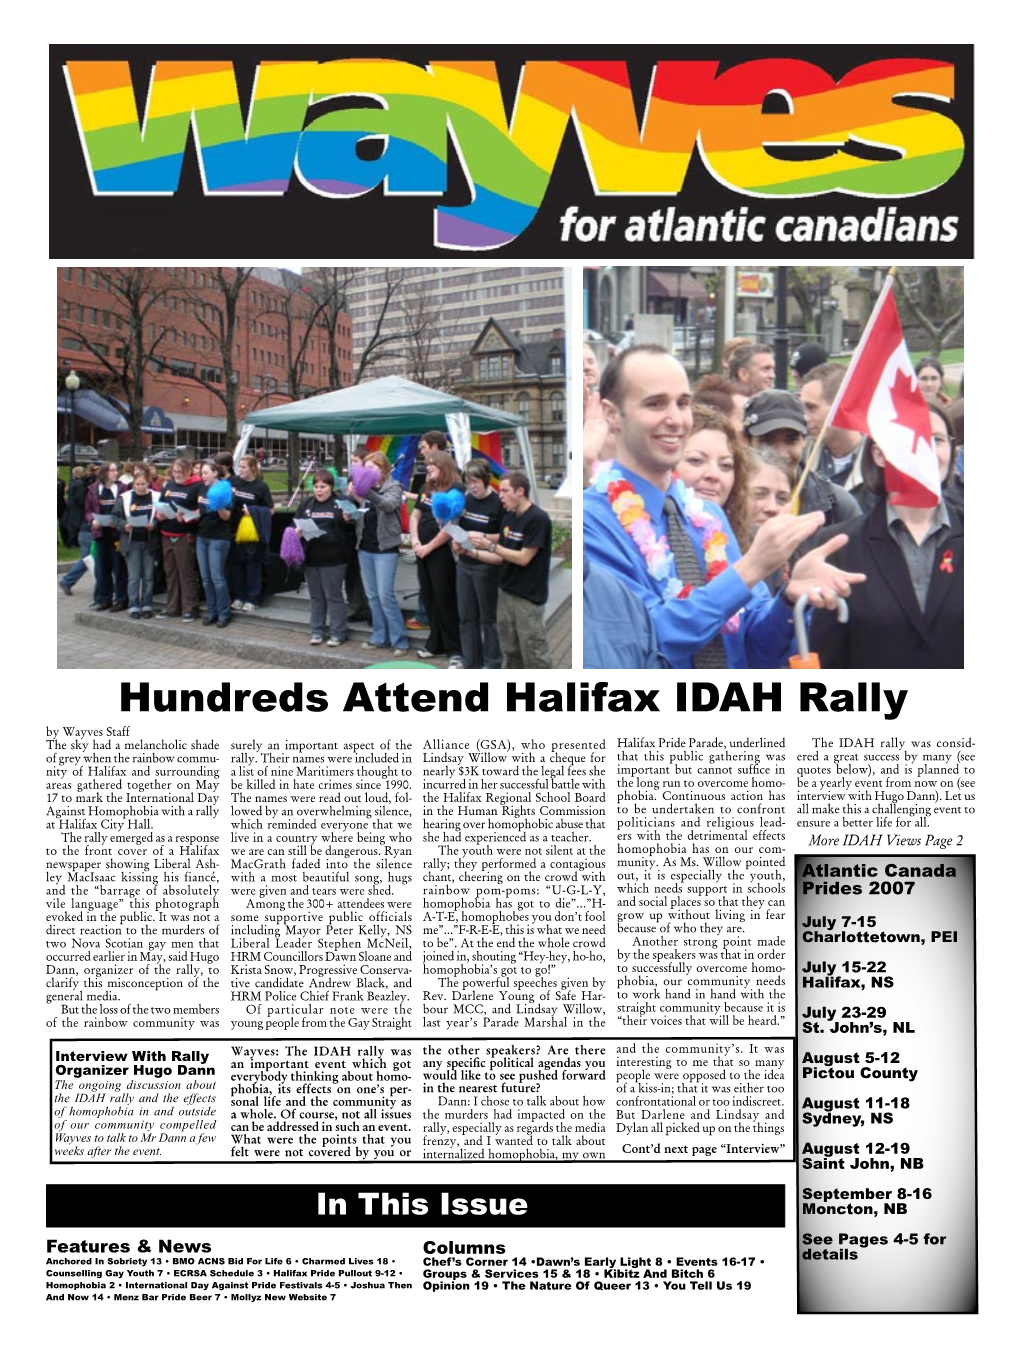 Hundreds Attend Halifax IDAH Rally